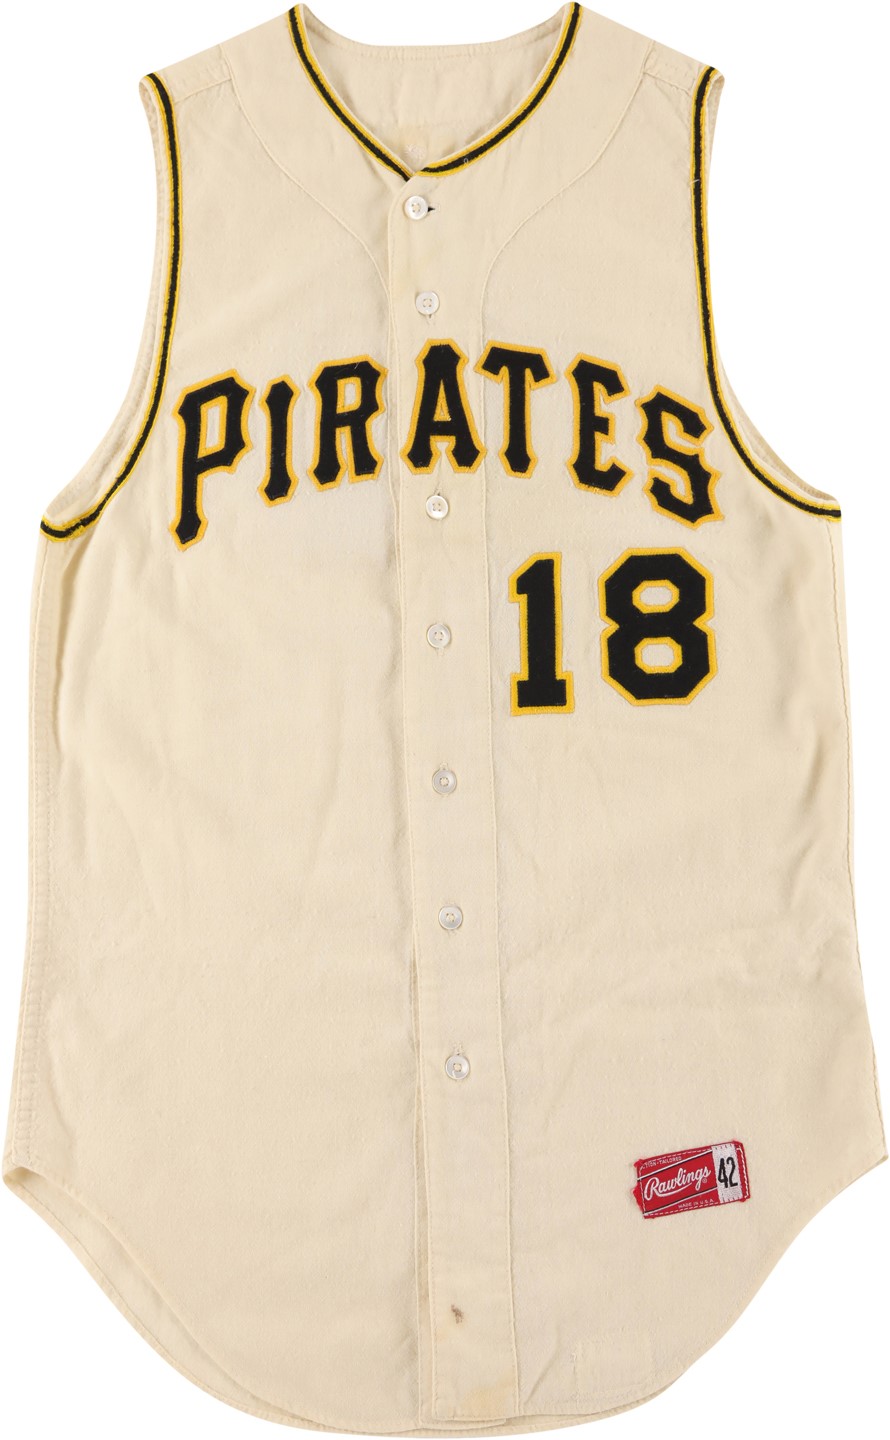 - 1965 Bill Virdon Pittsburgh Pirates Game Worn Jersey